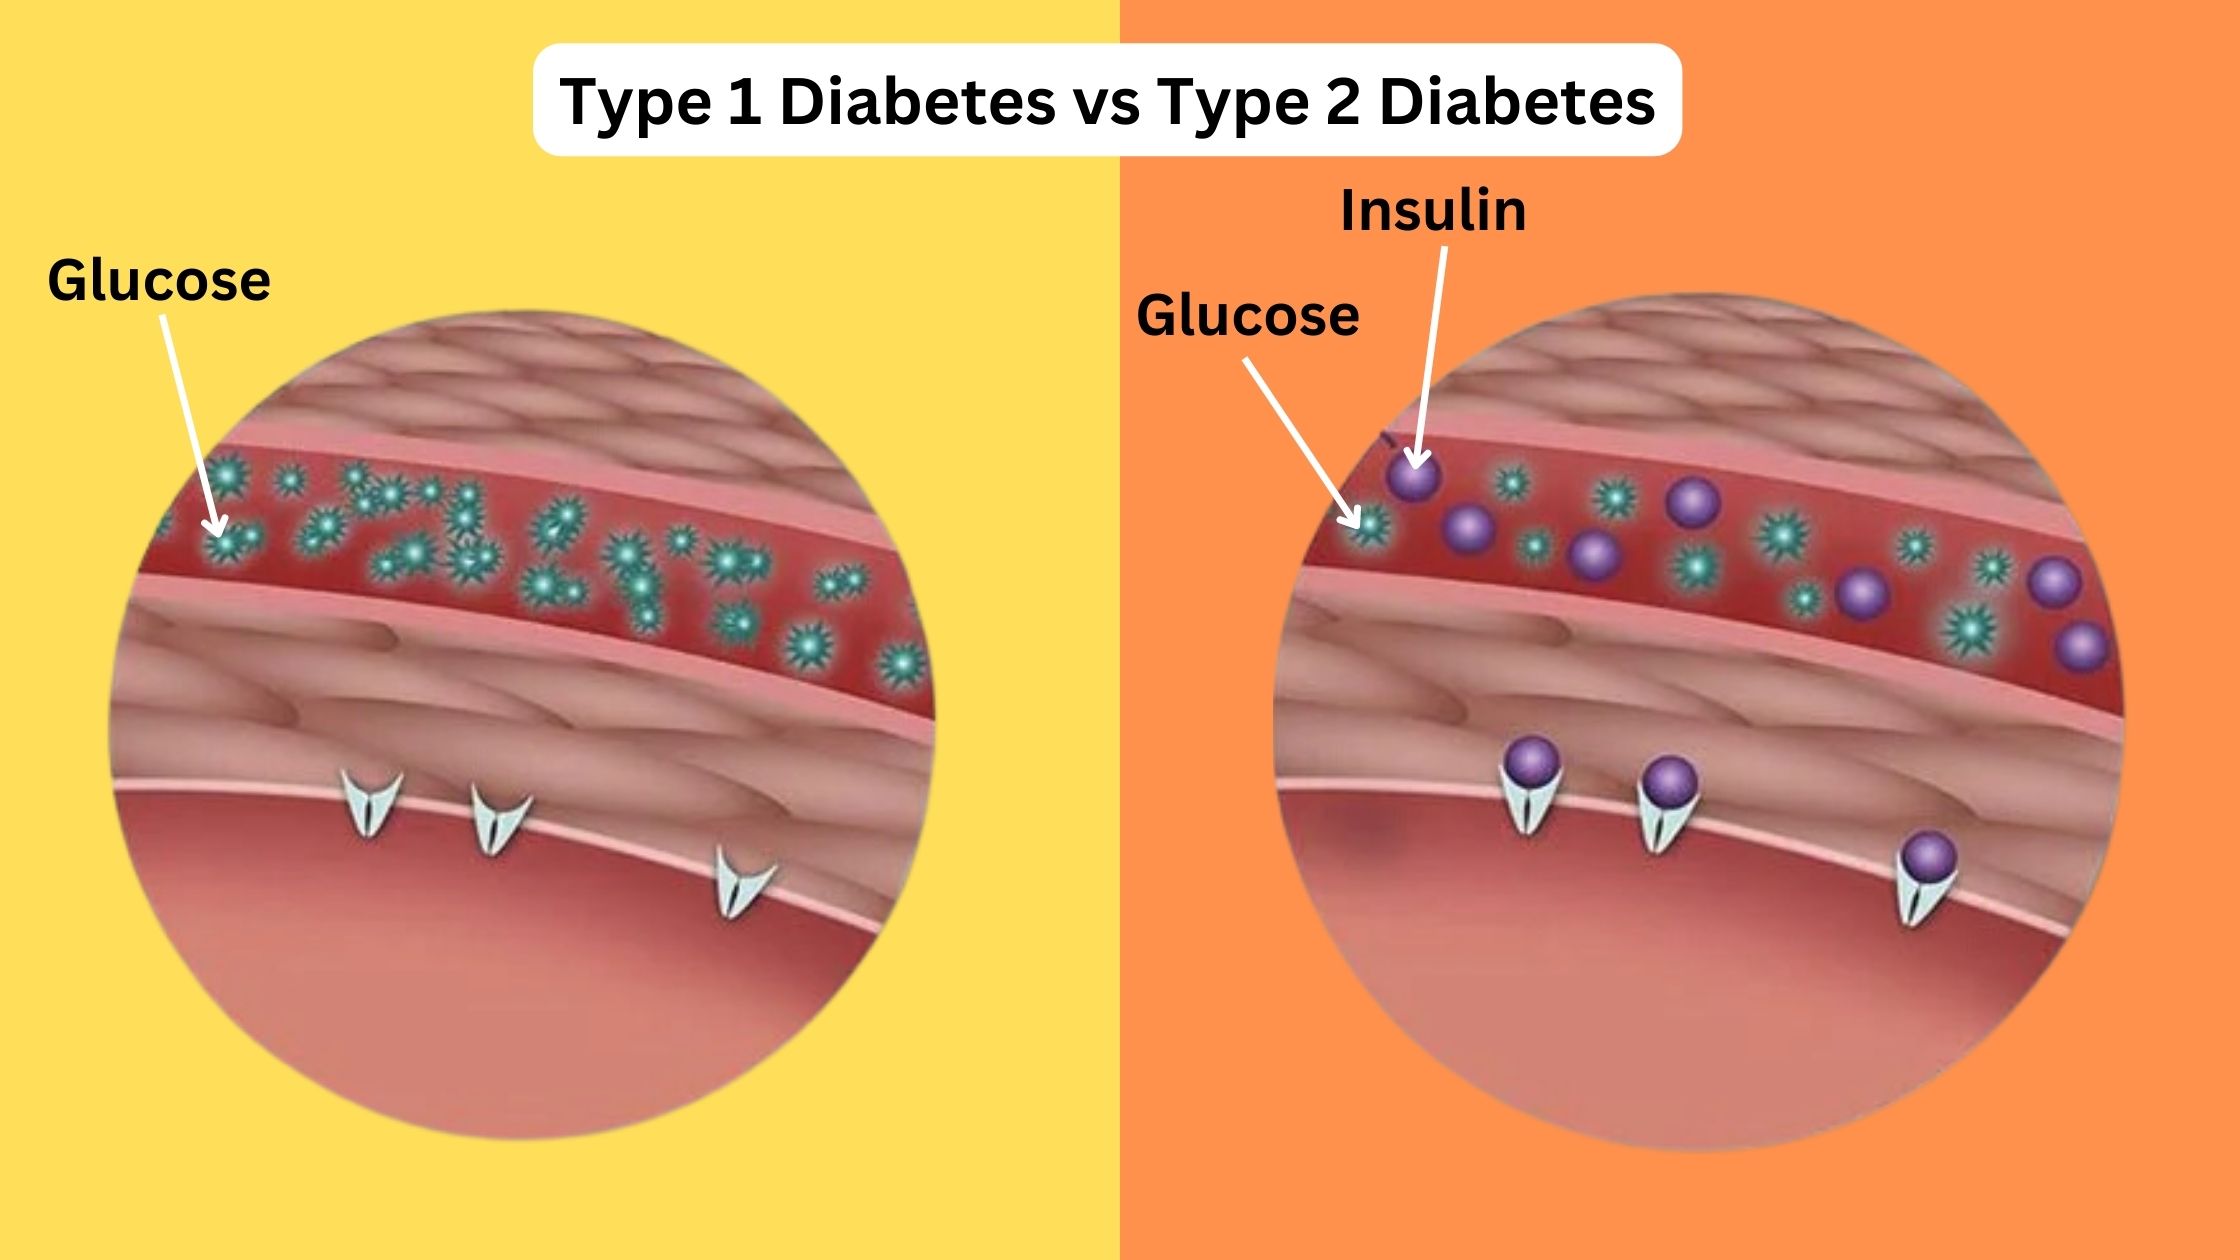 Type 1 Diabetes vs Type 2 Diabetes